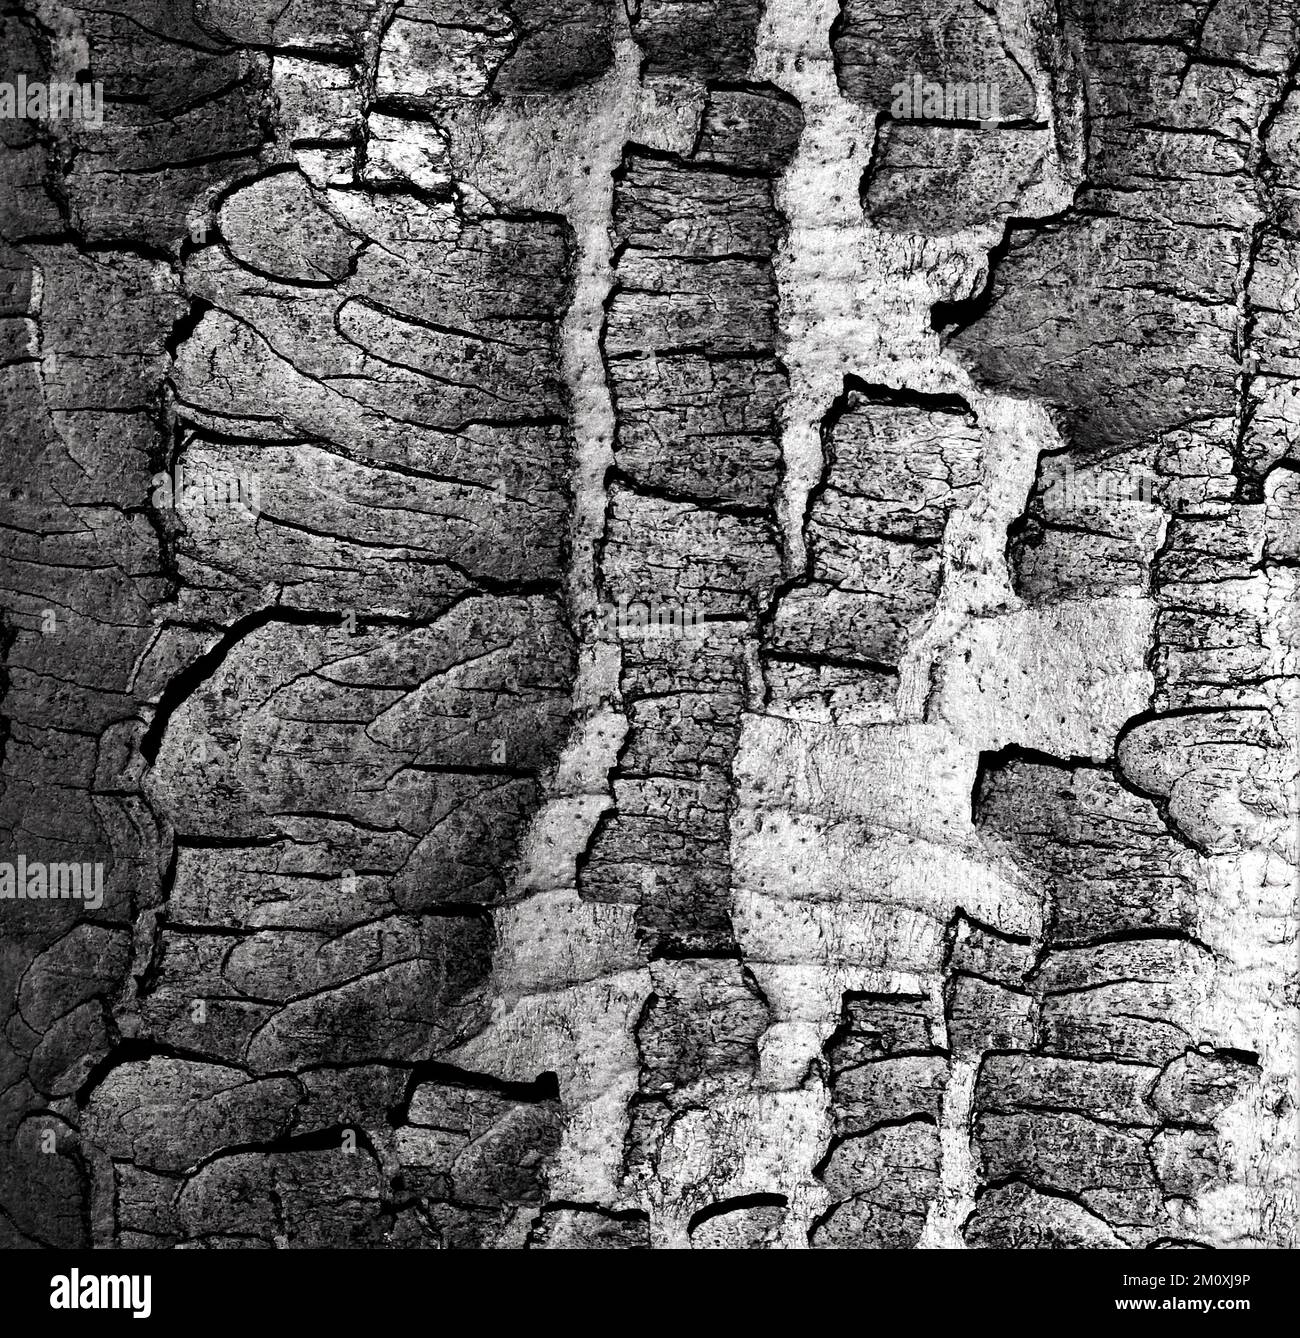 Immagini artistiche in bianco e nero di primo piano dettaglio naturale delle imperfezioni del faggio Foto Stock